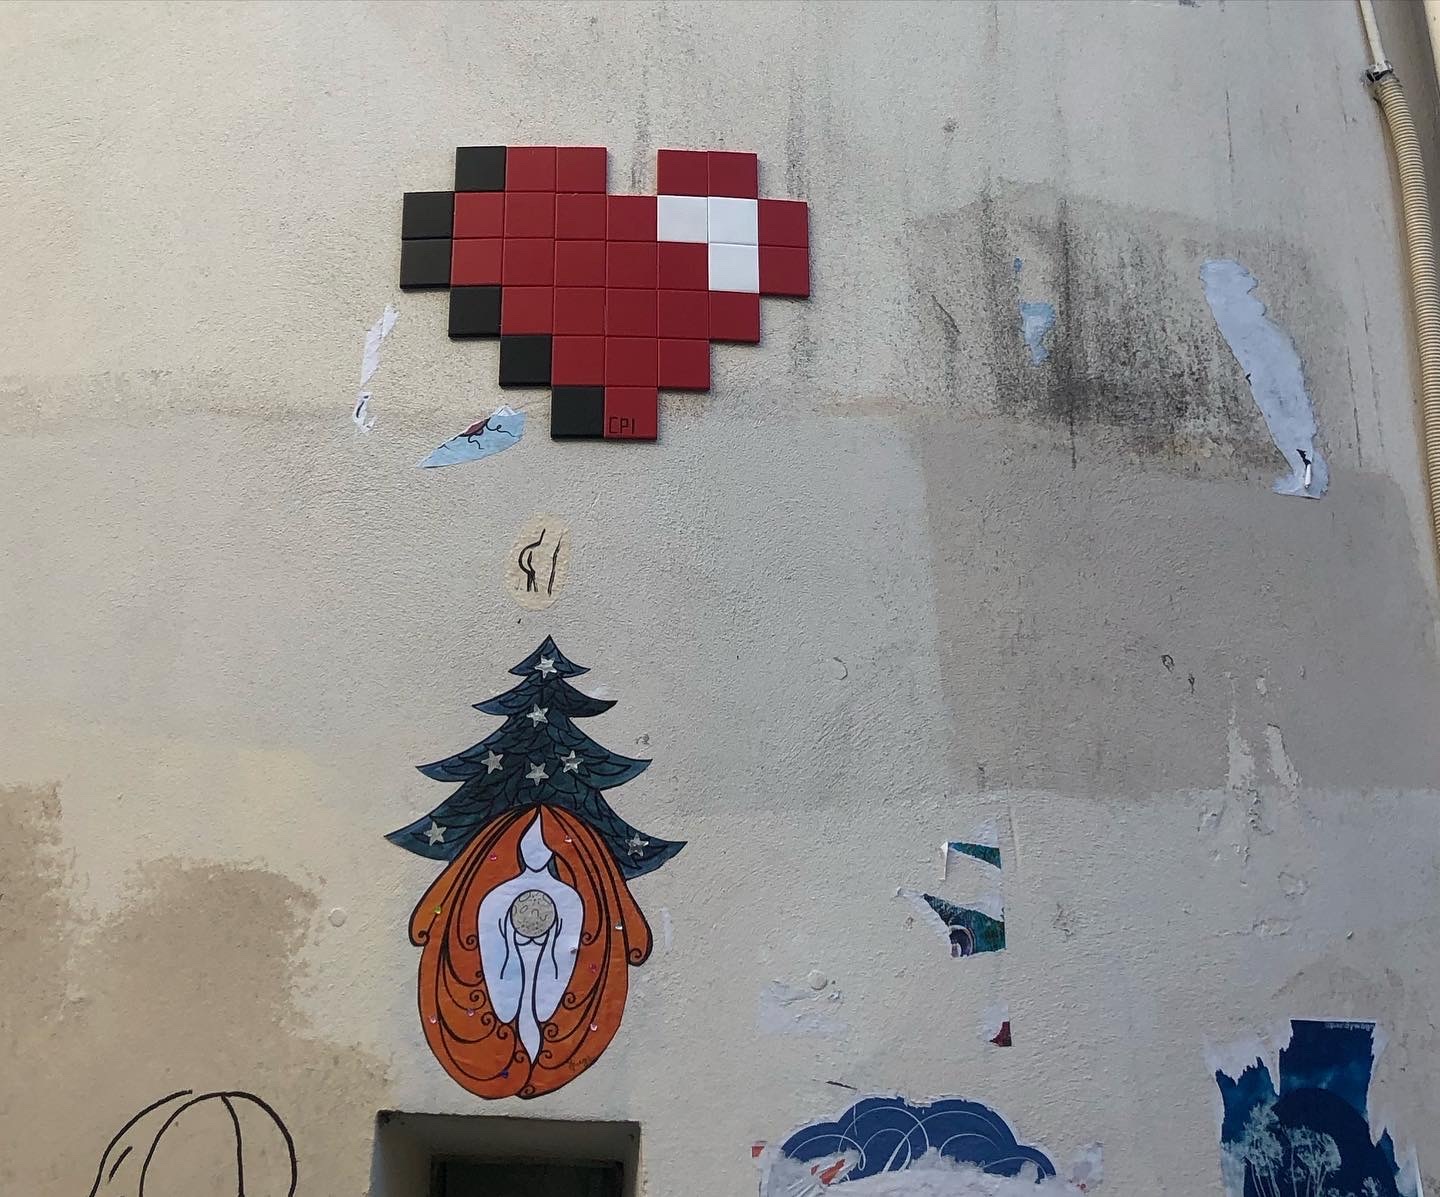 Mosaic 5535 Cœur pixel de l'artiste Coeur pixel à Paris France